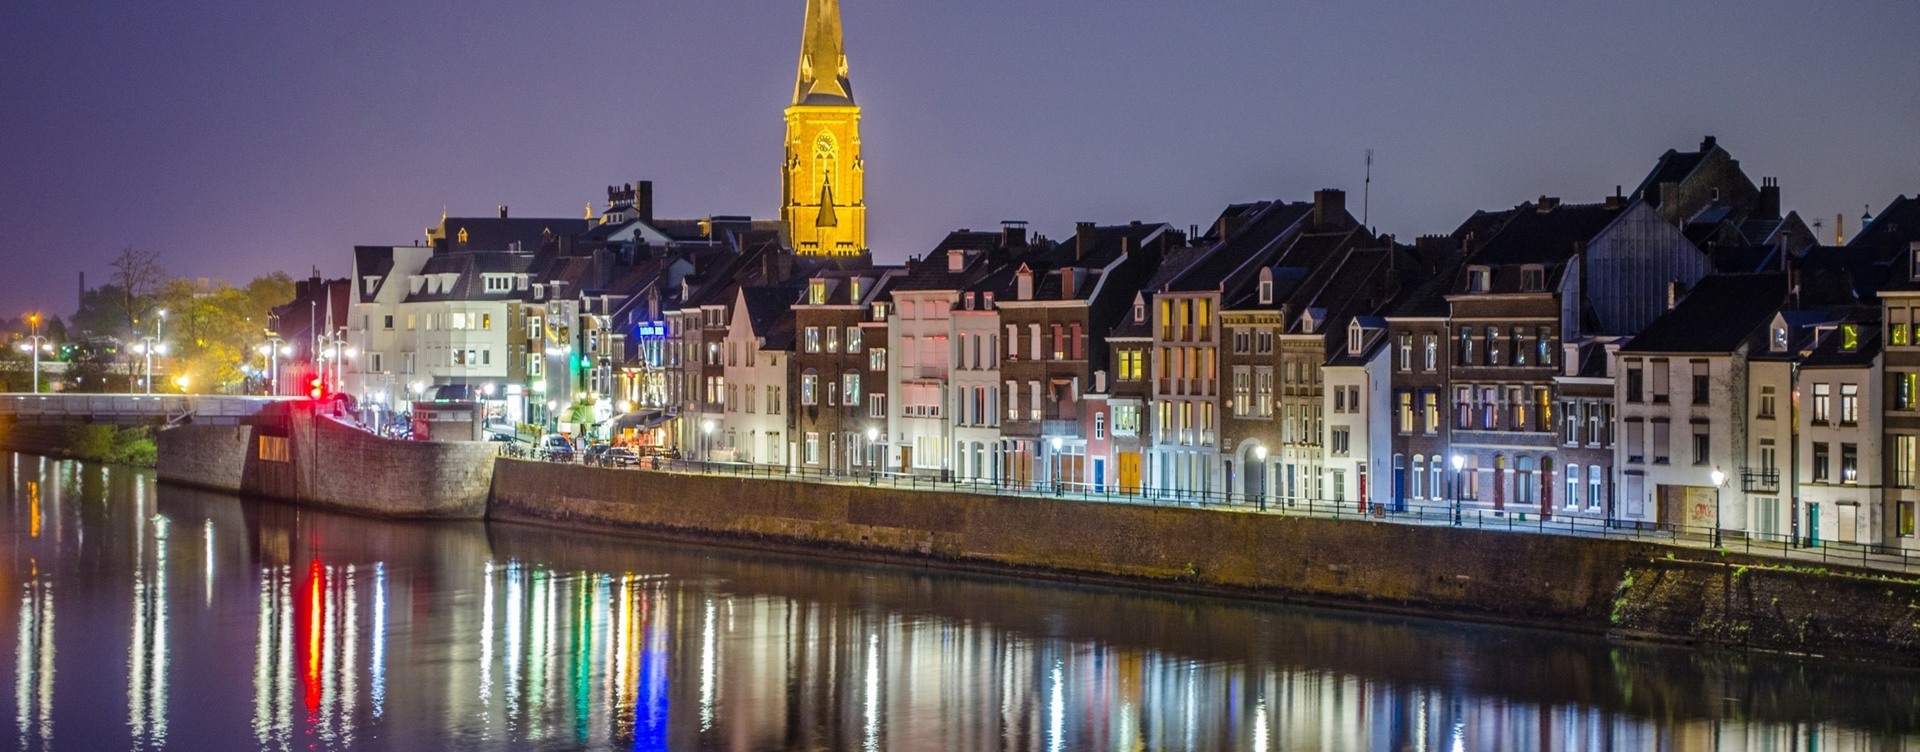 Geniet van een luxe hotelovernachting
in het bruisende Maastricht